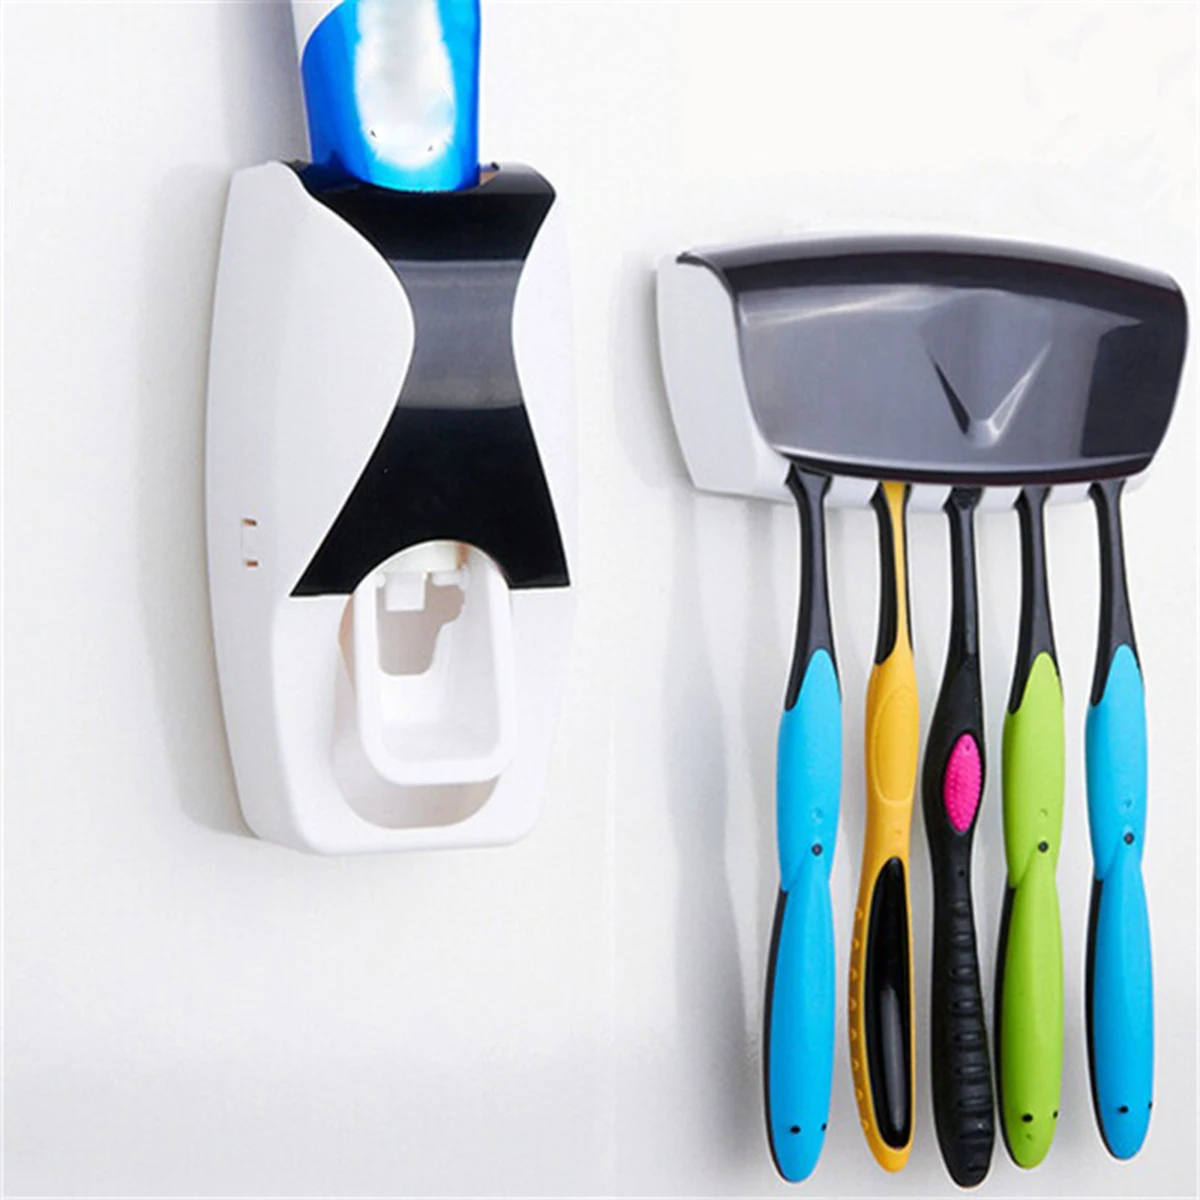 

Автоматический Дозатор зубной пасты + 5 Слот настенный держатель для зубных щеток дозатор зубной пасты набор для стеллаж для выставки товар...